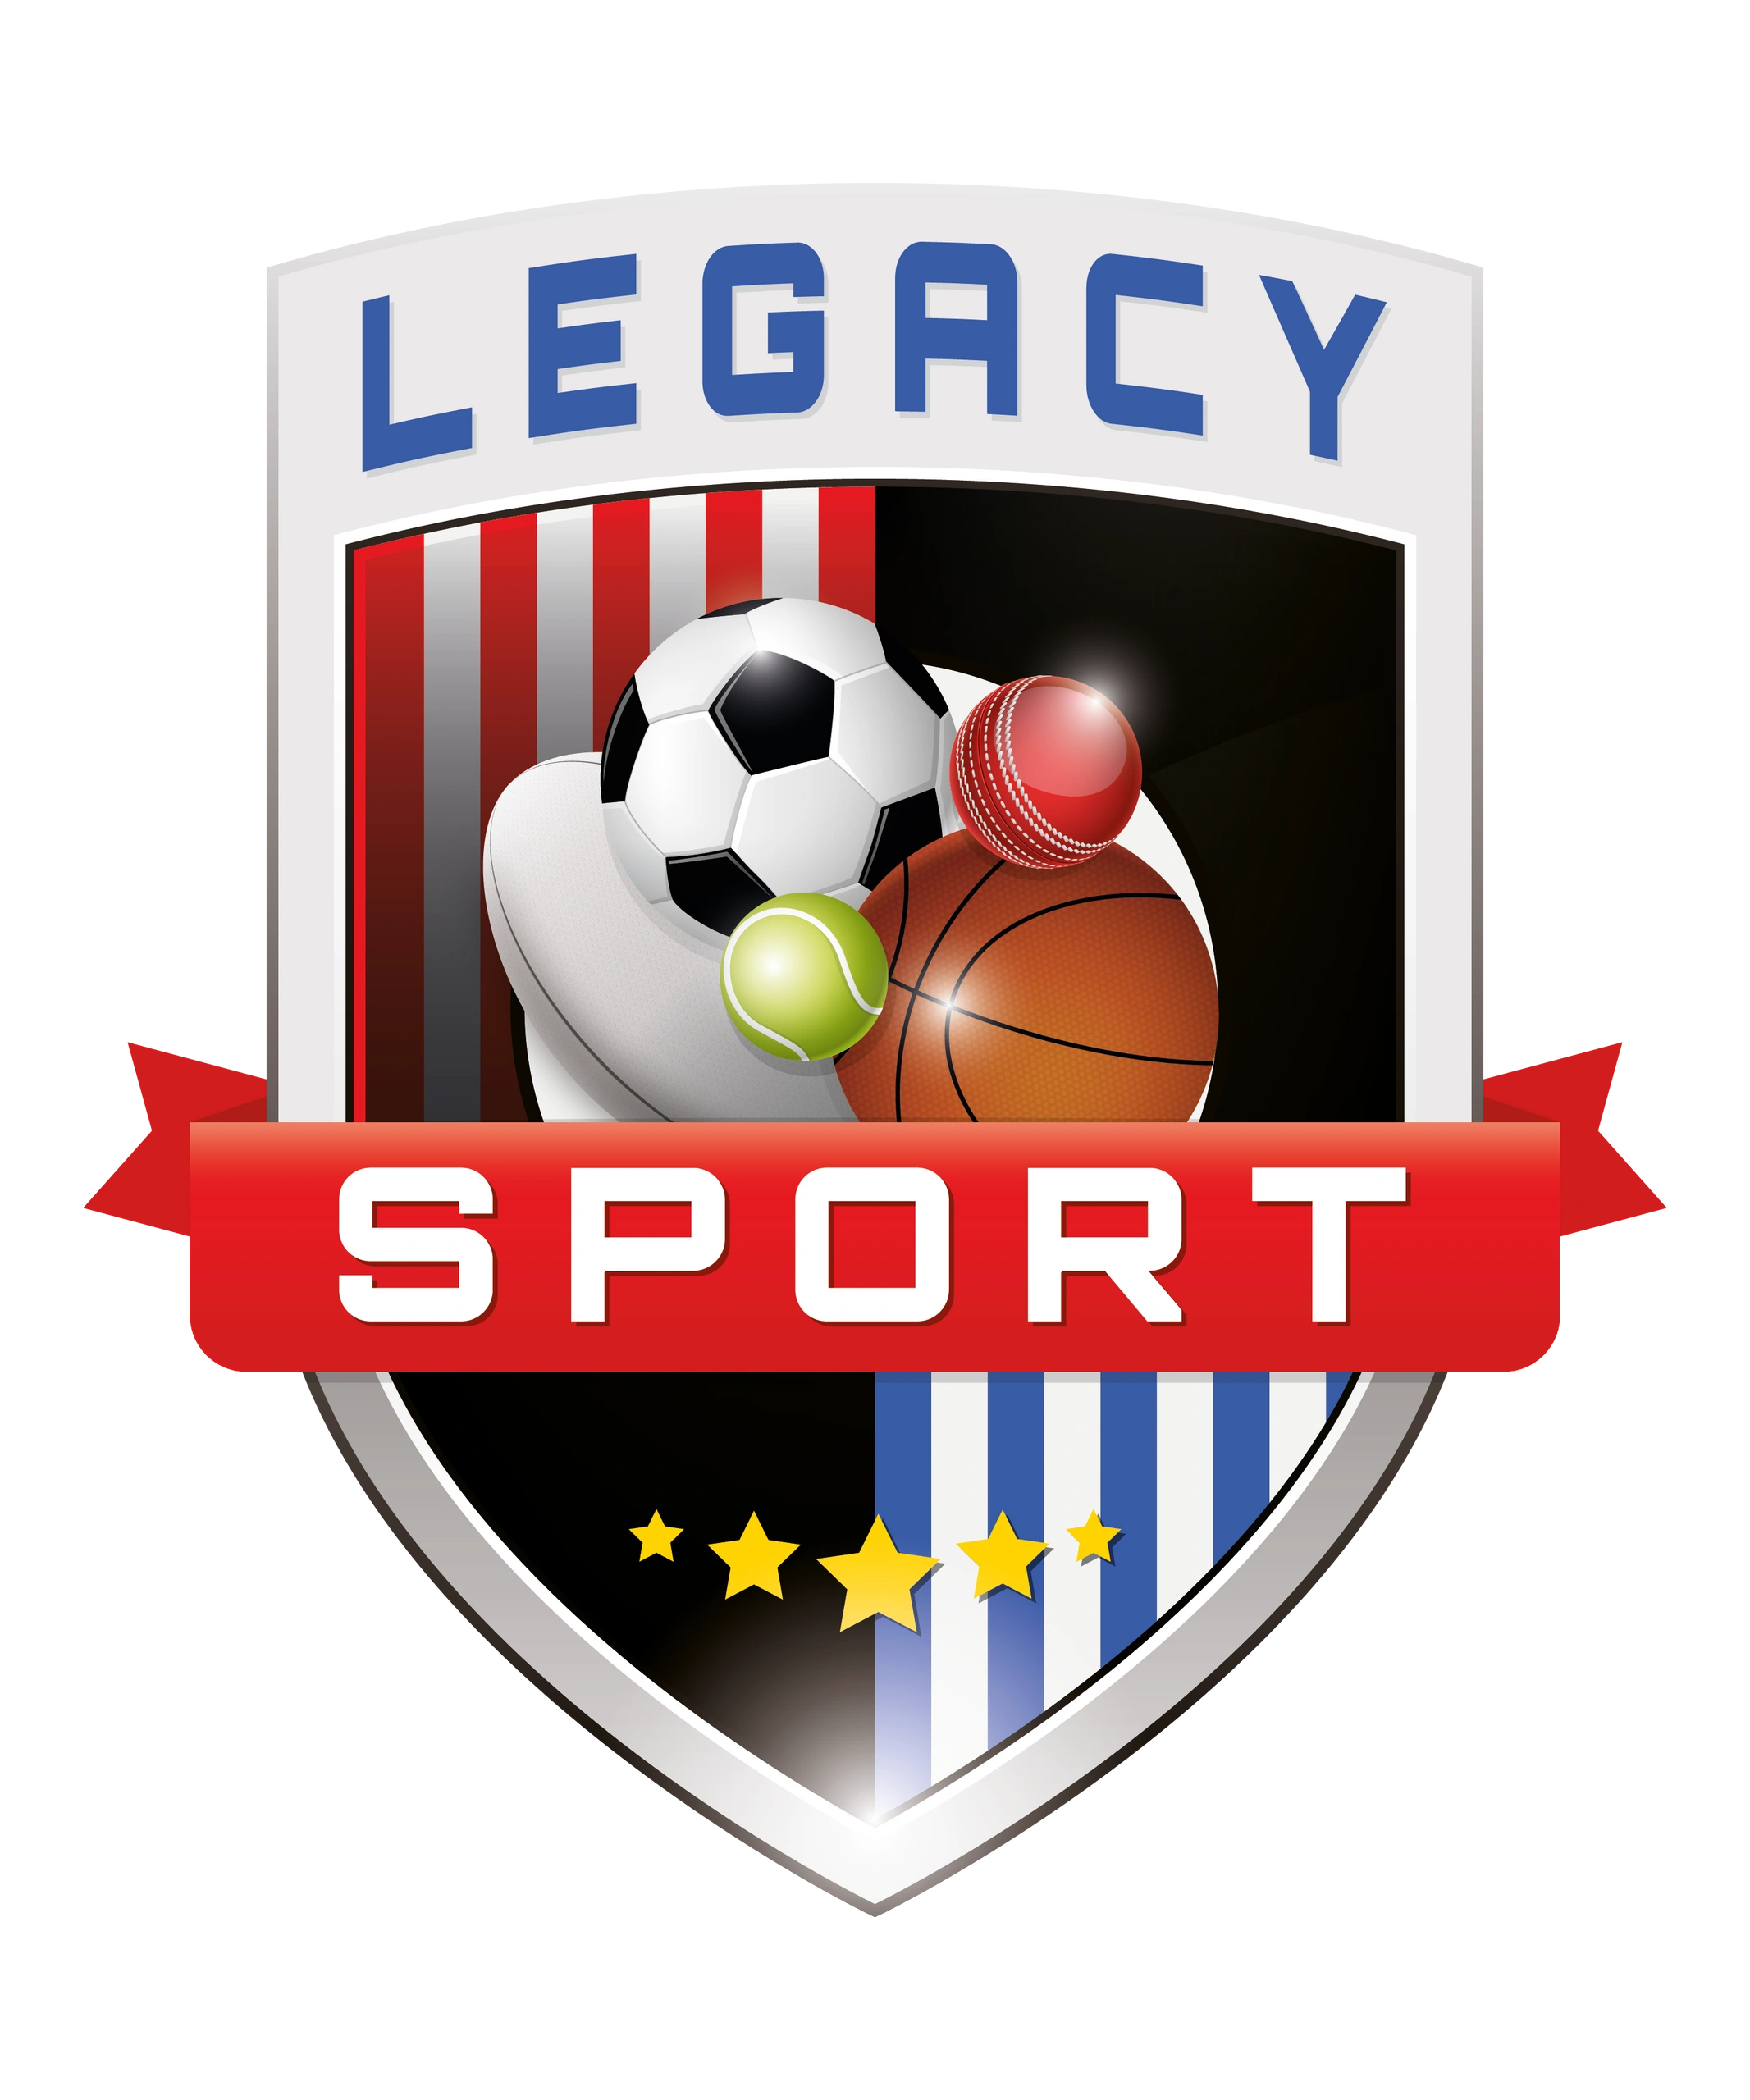 Sports Club - Legacy Sport